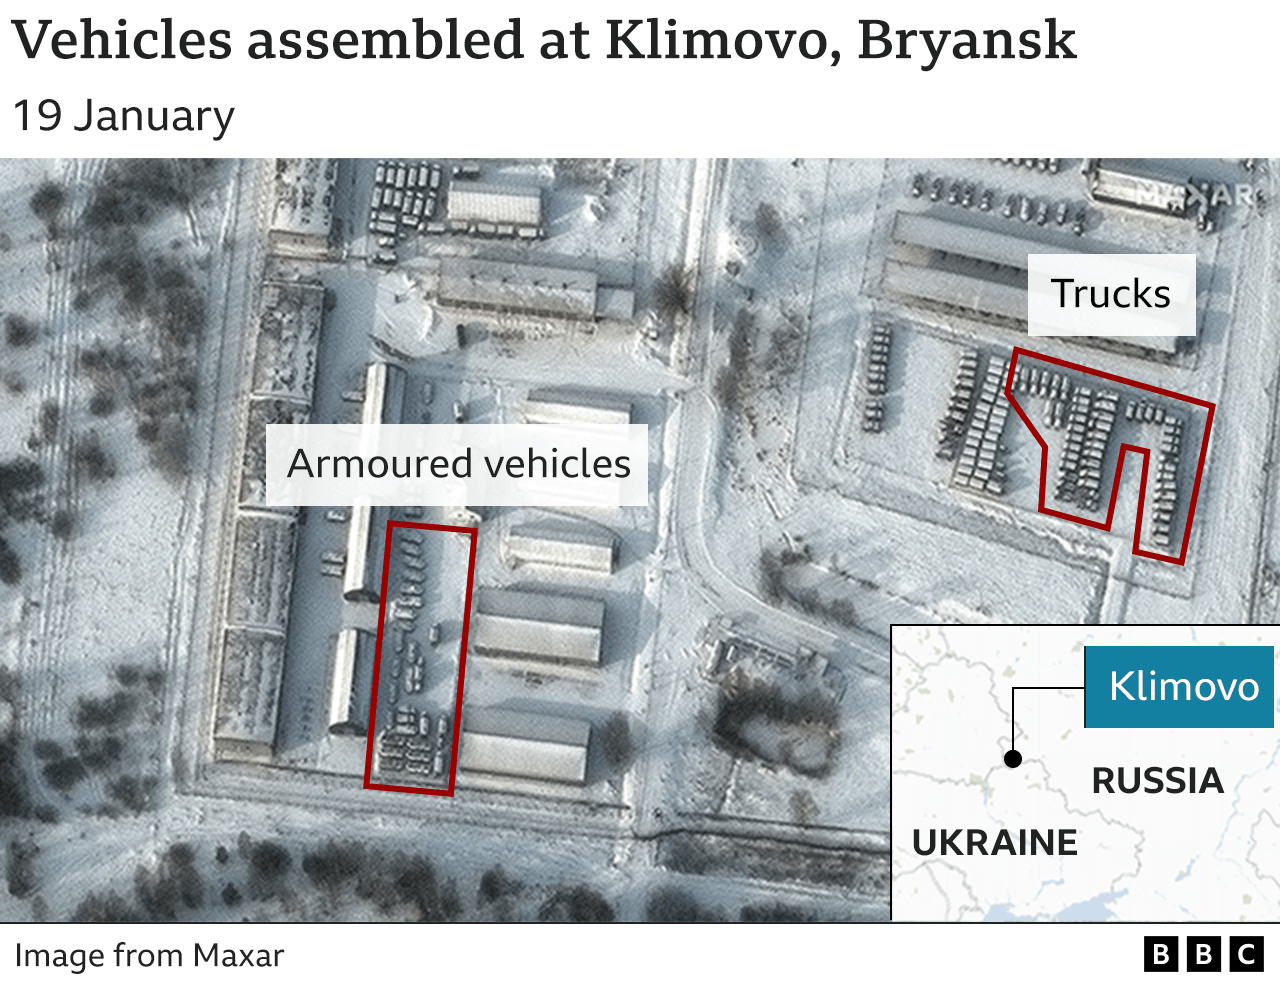 Satellite image showing vehicles in Klimovo